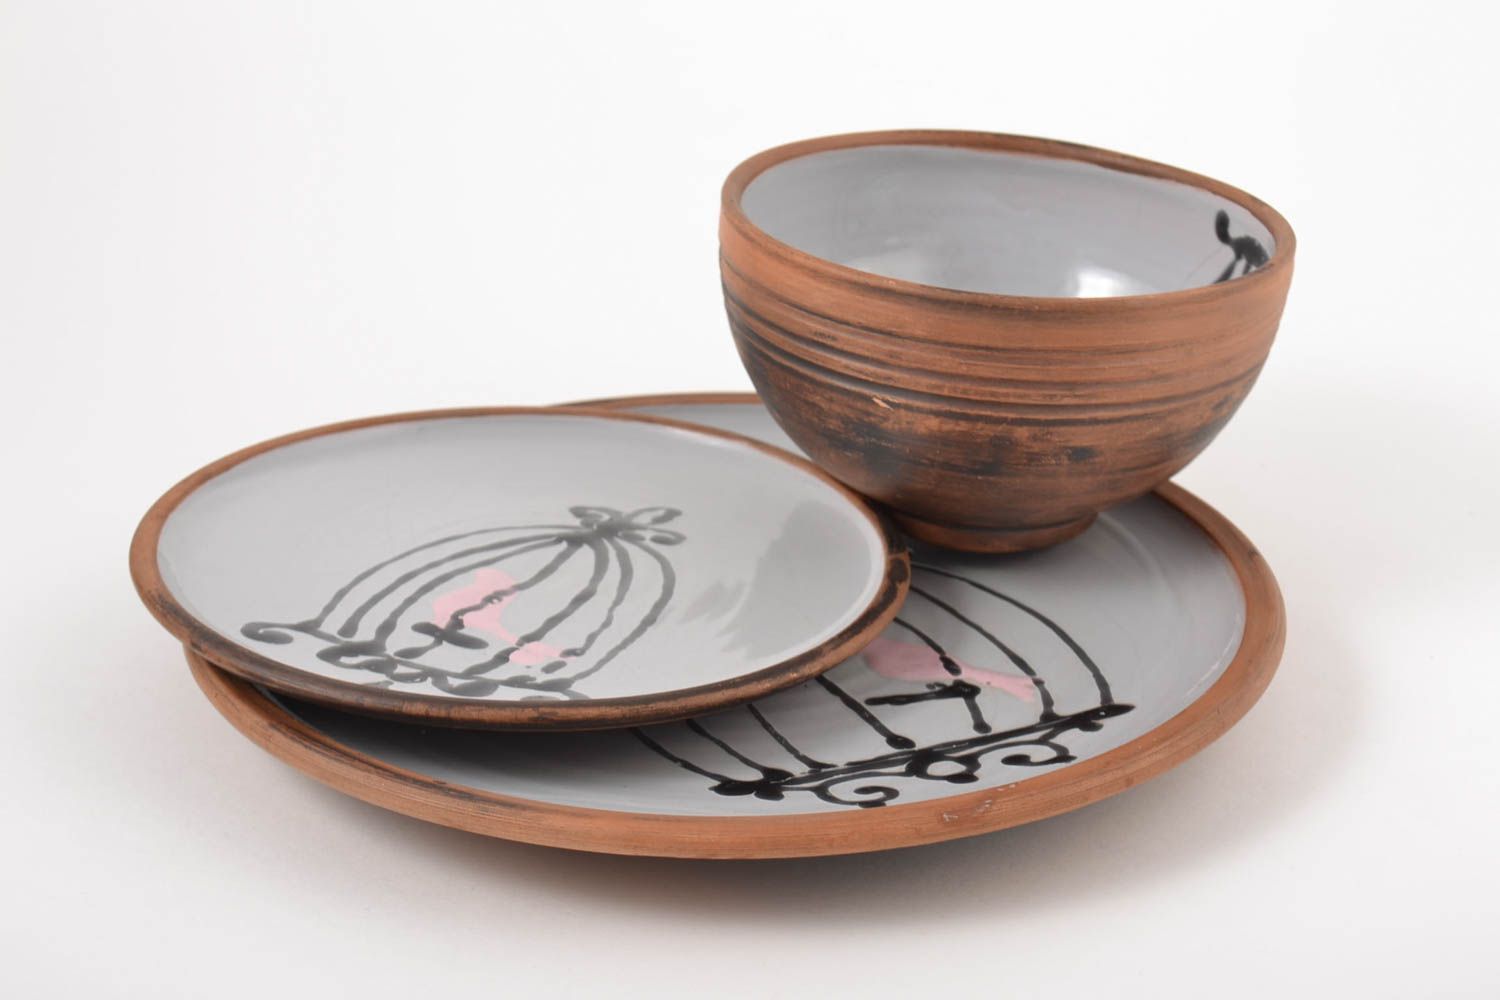 Ceramic designer plates unusual handmade kitchenware 3 stylish lovely plates photo 4